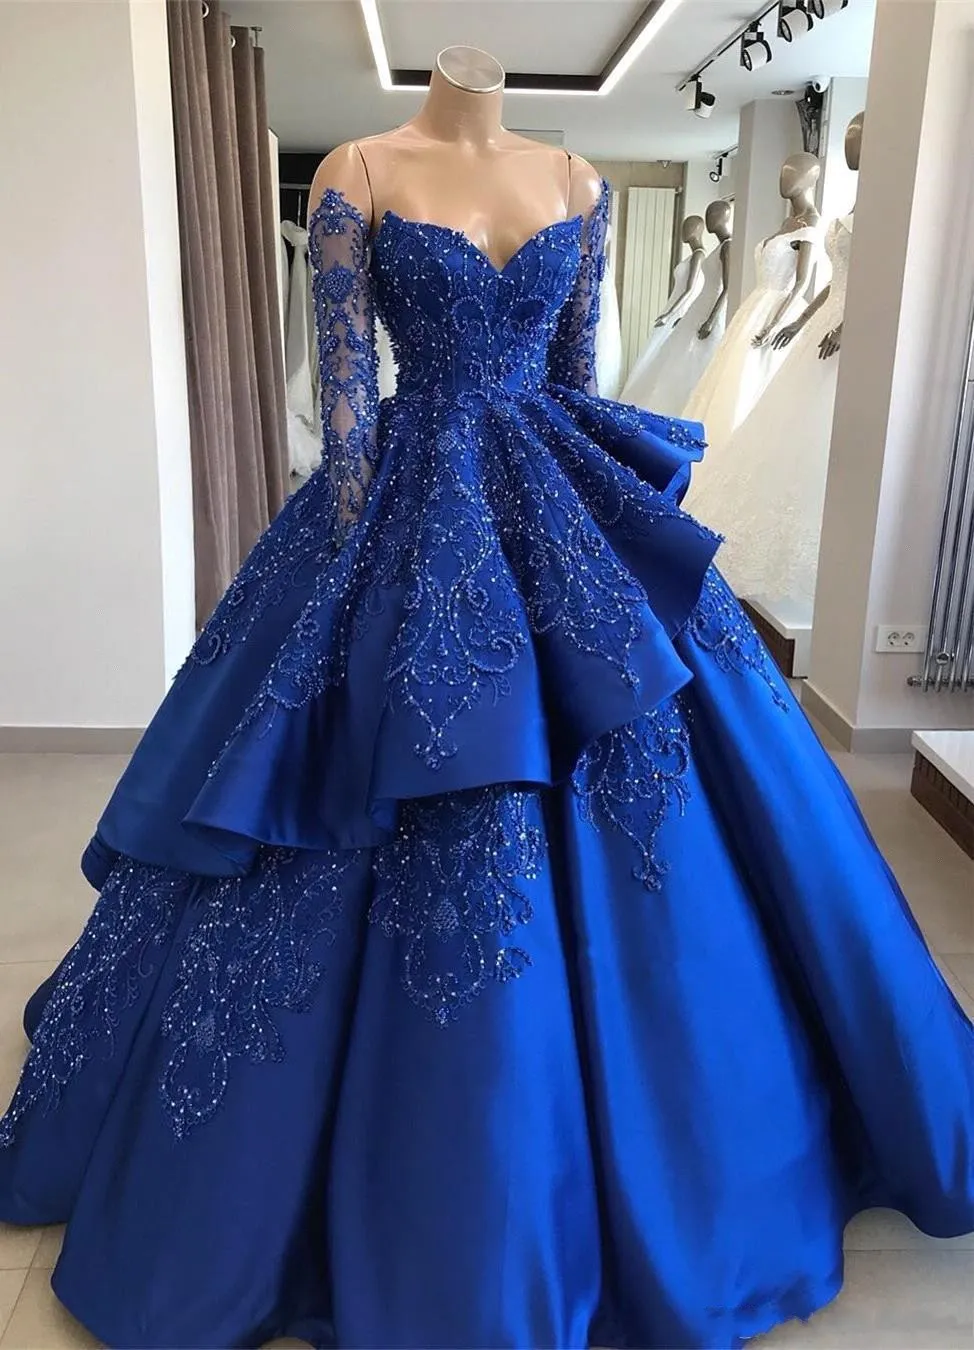 로얄 블루 Quinceanera Dresses 2019 긴 소매 구슬 숄더가 숄더백에서 opered 공 가운을 끕니다. 새틴 스윕 기차 파티 공주 파티 드레스